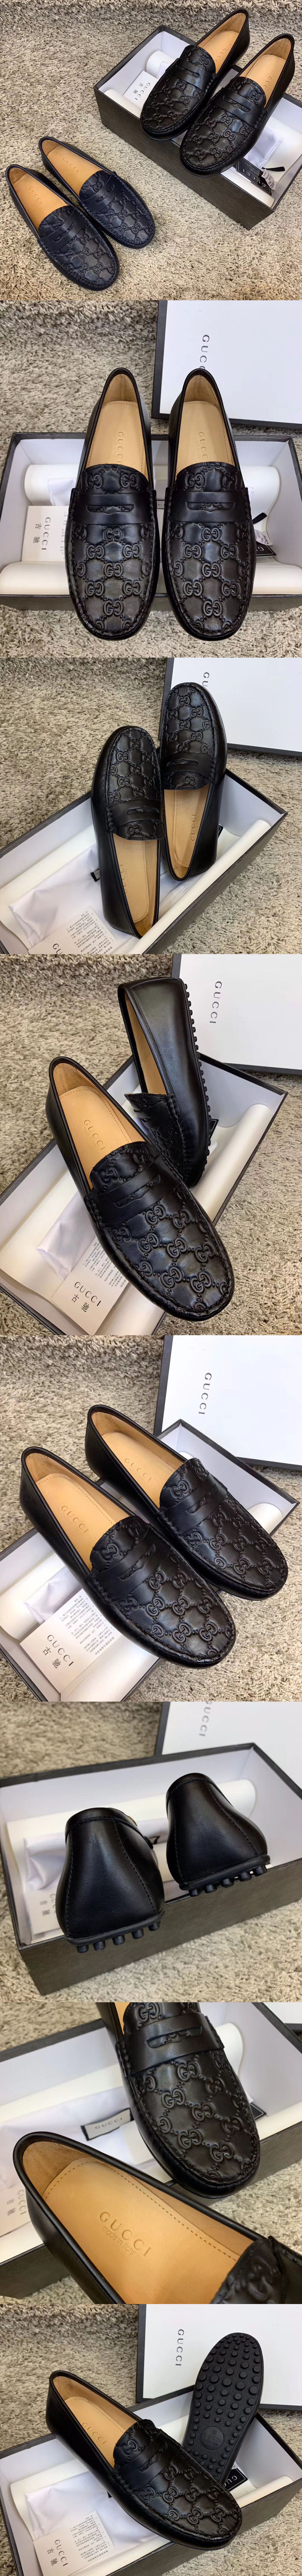 Replica Gucci 431063 Signature driver Shoes Black Leather